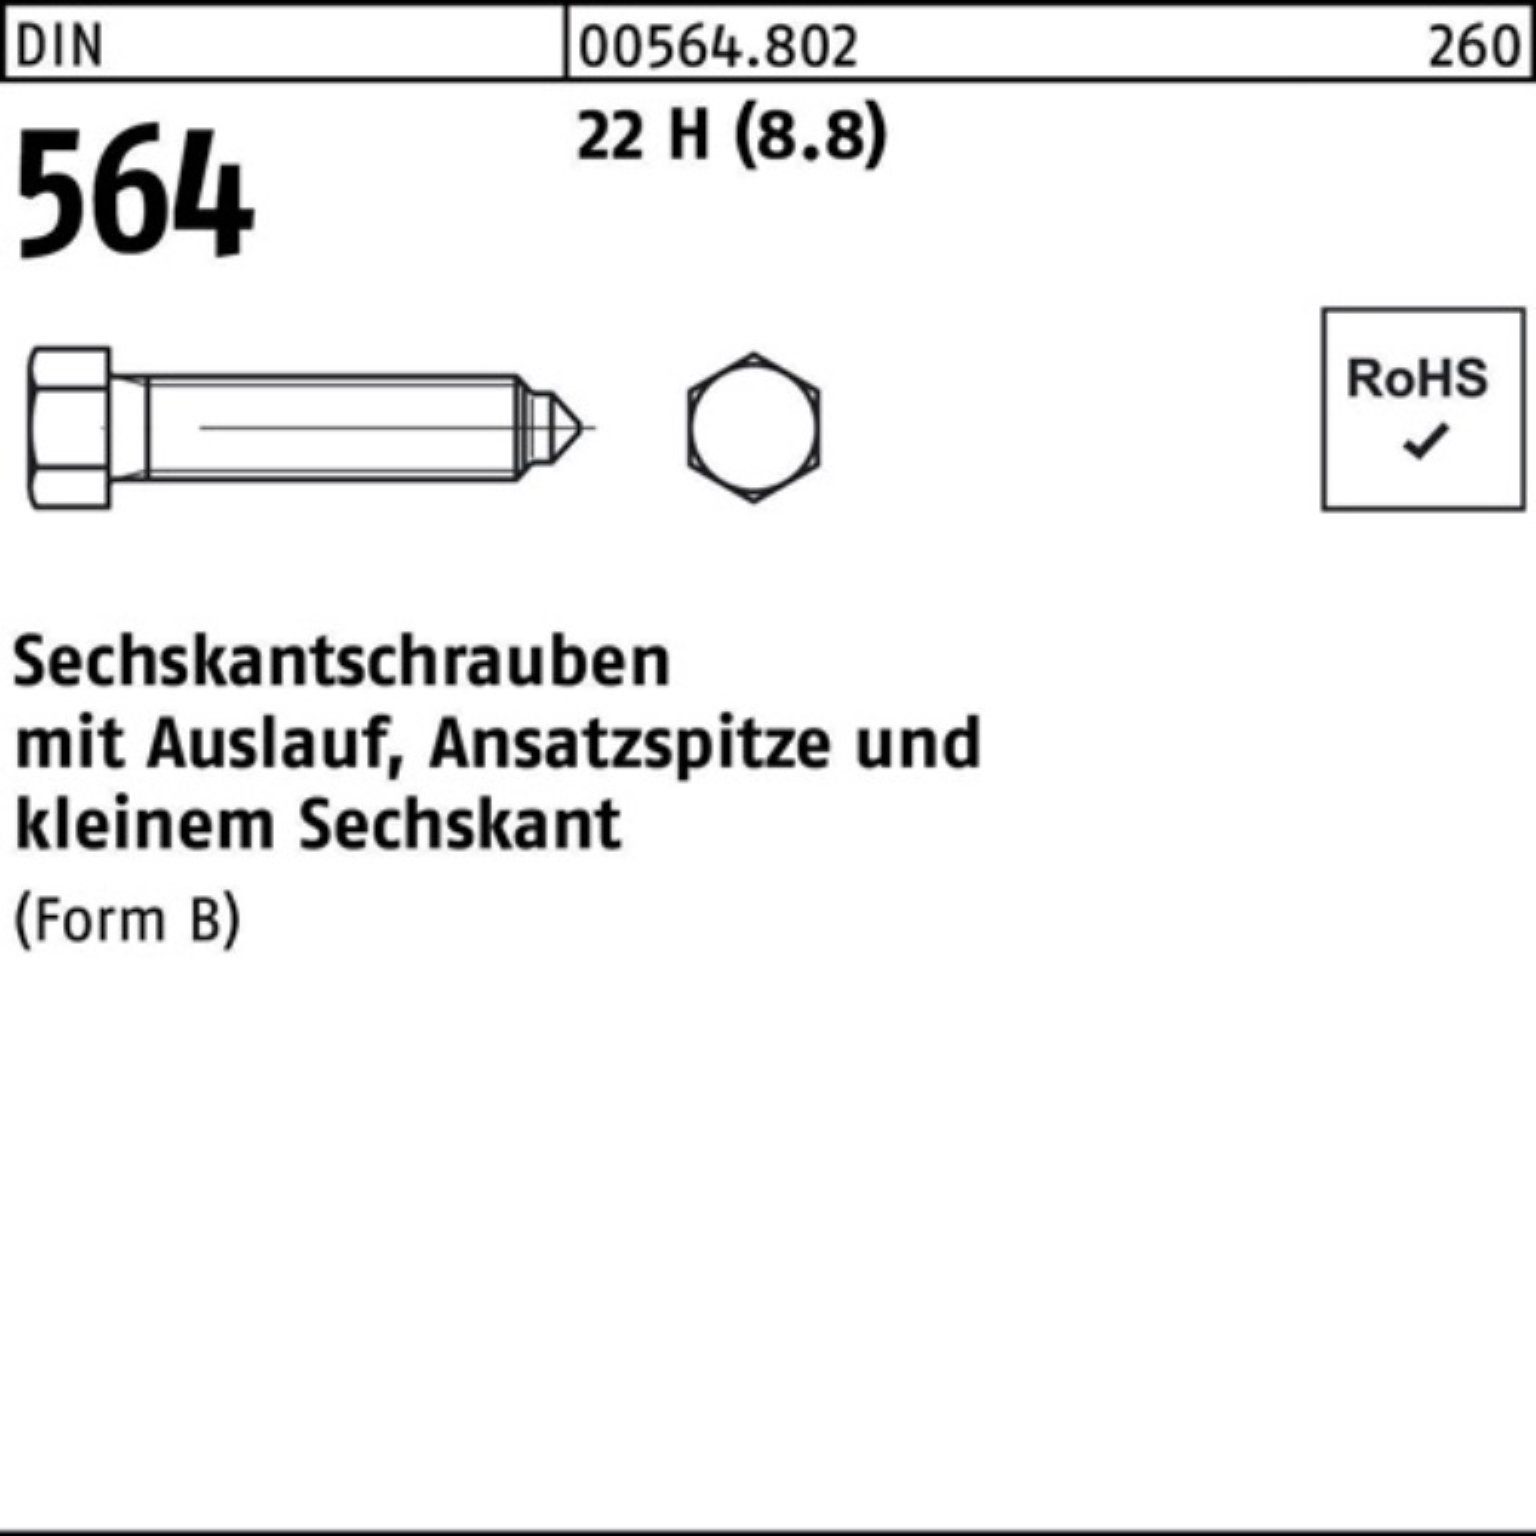 Sechskantschraube Reyher 70 564 Pack 100er BM 20x 22 DIN Ansatzspitze/Auslauf Sechskantschraube